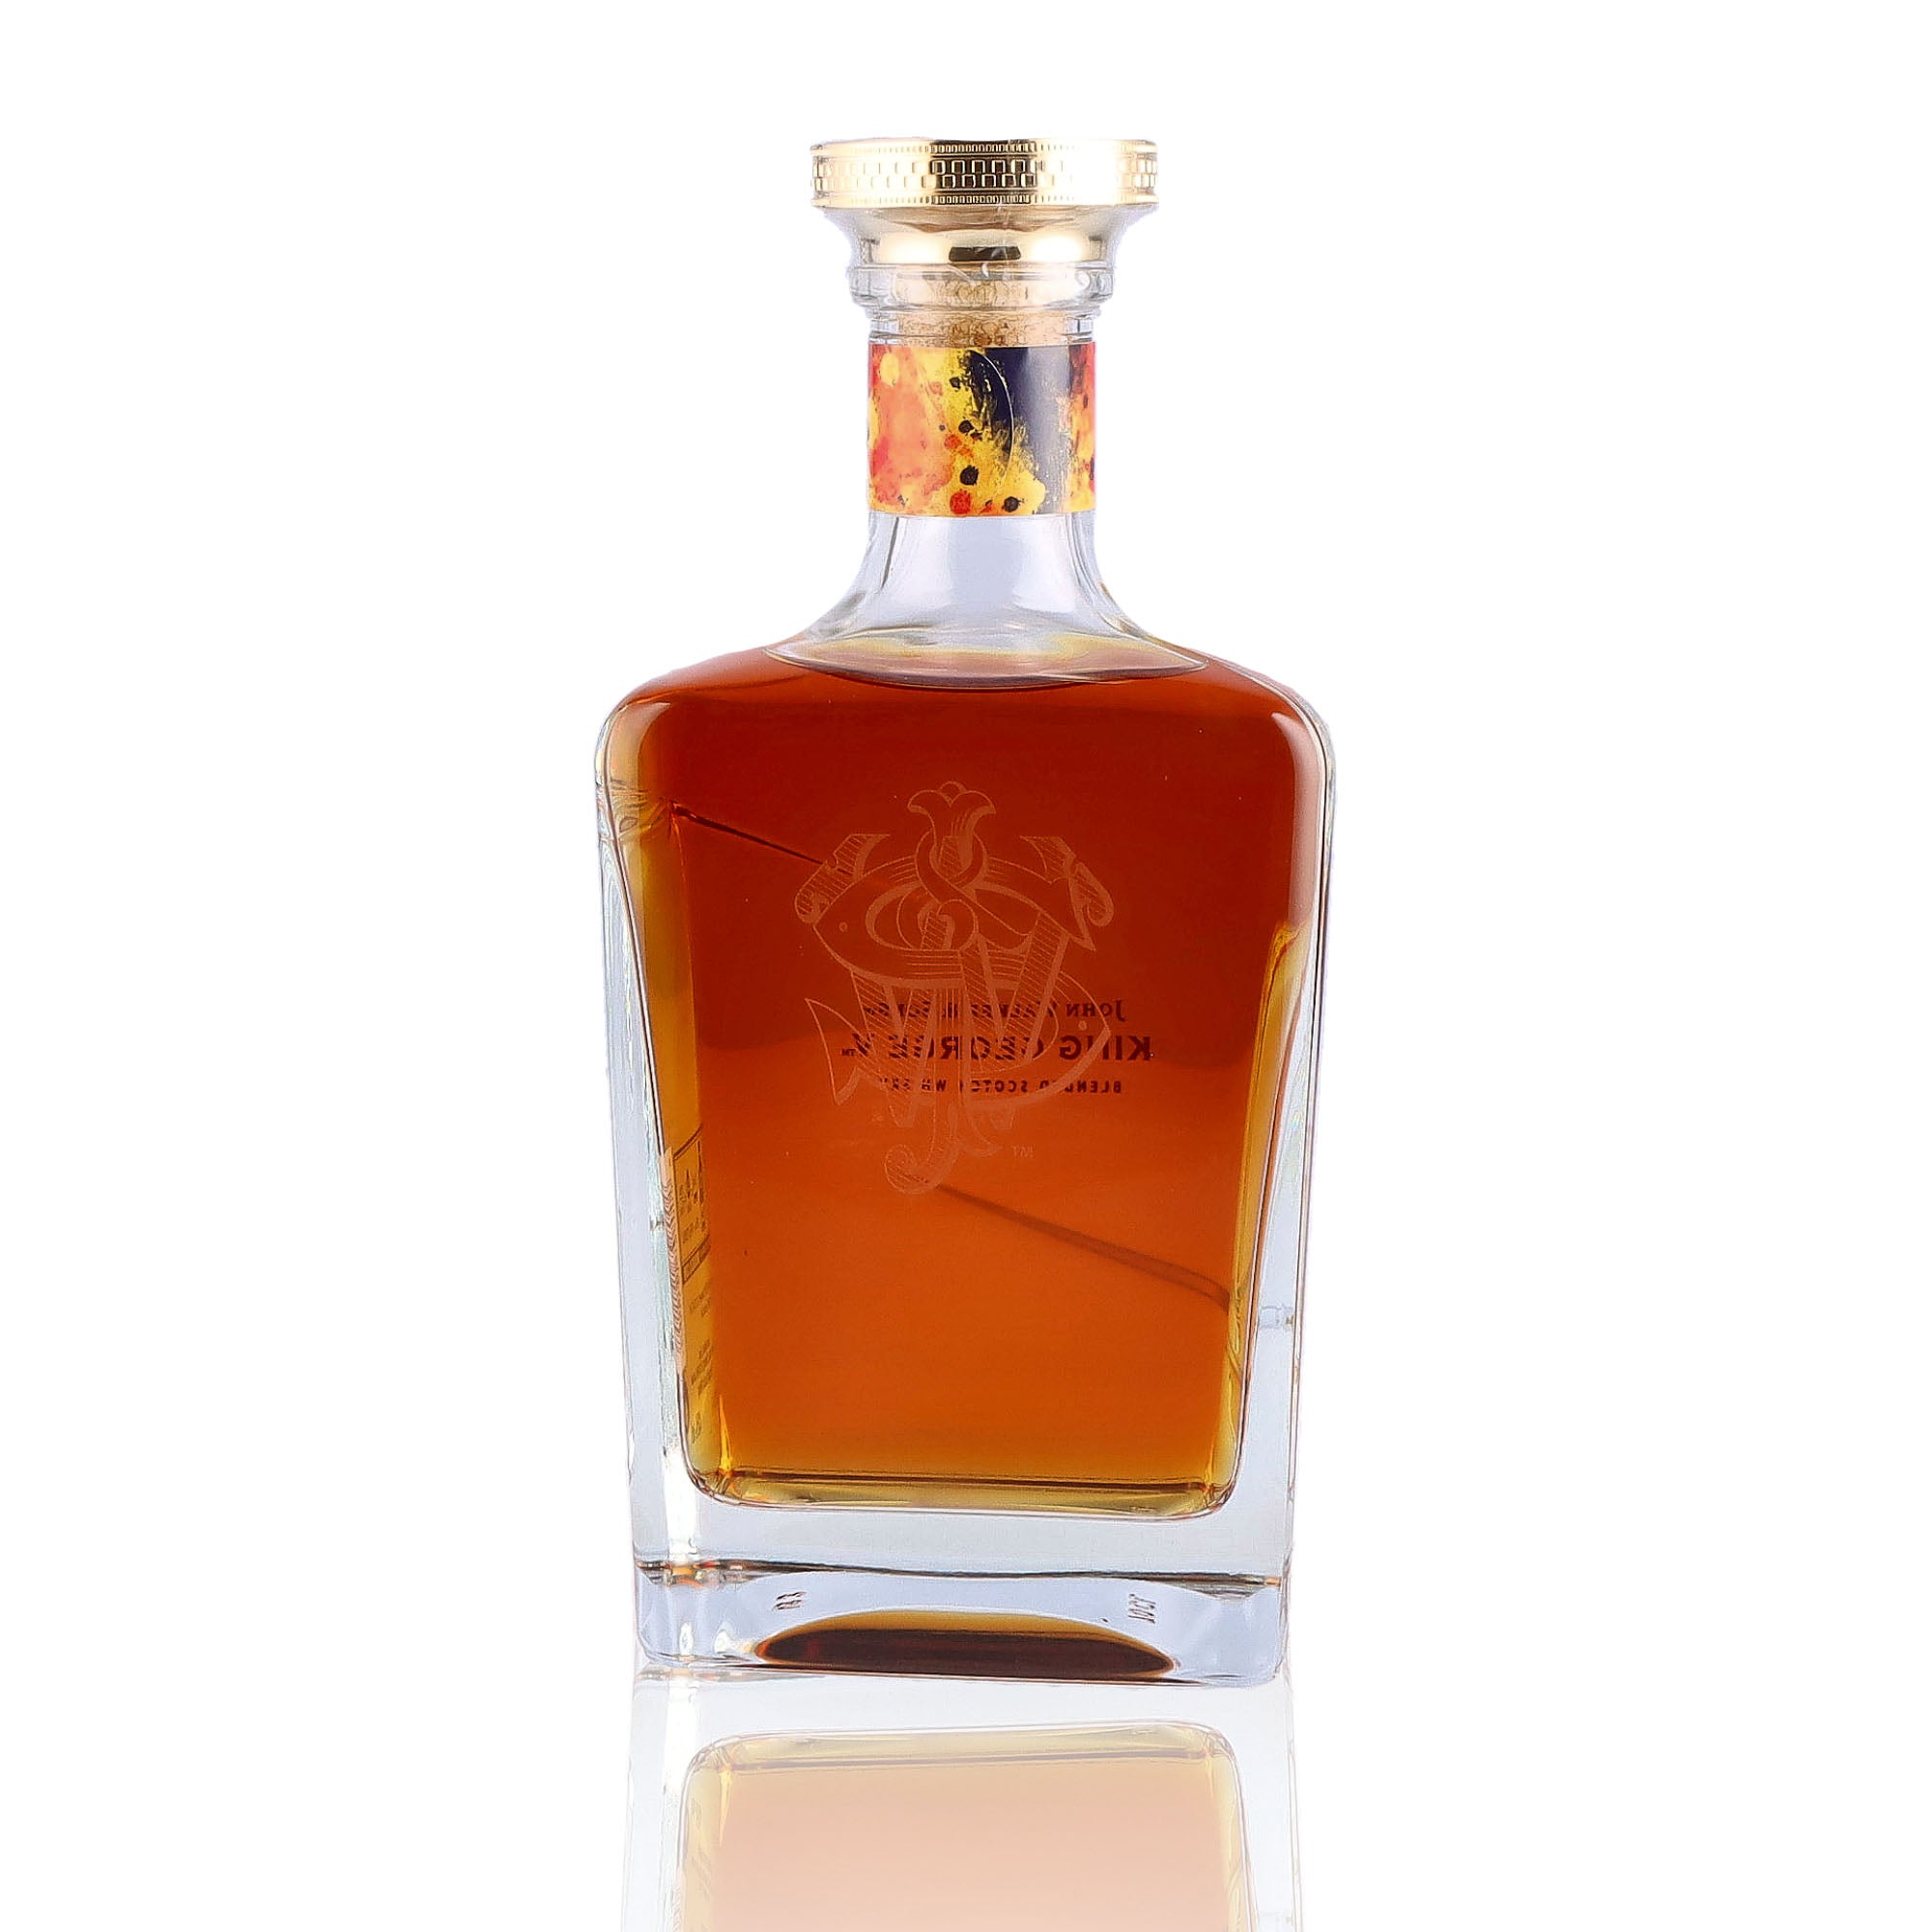 Une bouteille de Scotch Whisky Blends de la marque Johnnie Walker, nommée Sons King George, du millésime 2023